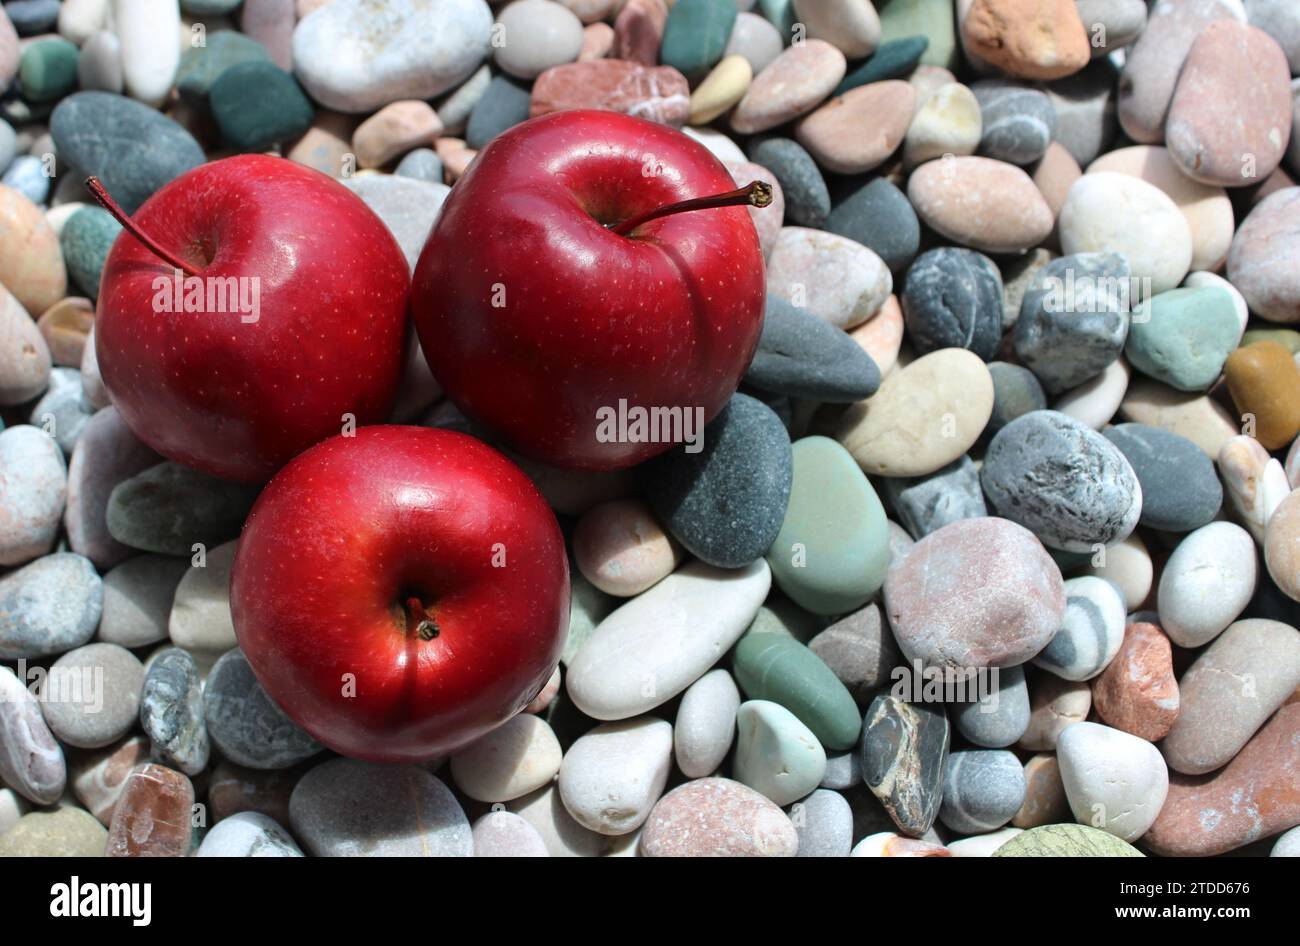 La lumière du soleil illumine trois pommes rouges juteuses sur une pierre colorée dans un côté de concept d'image pour la conception ou la décoration Banque D'Images